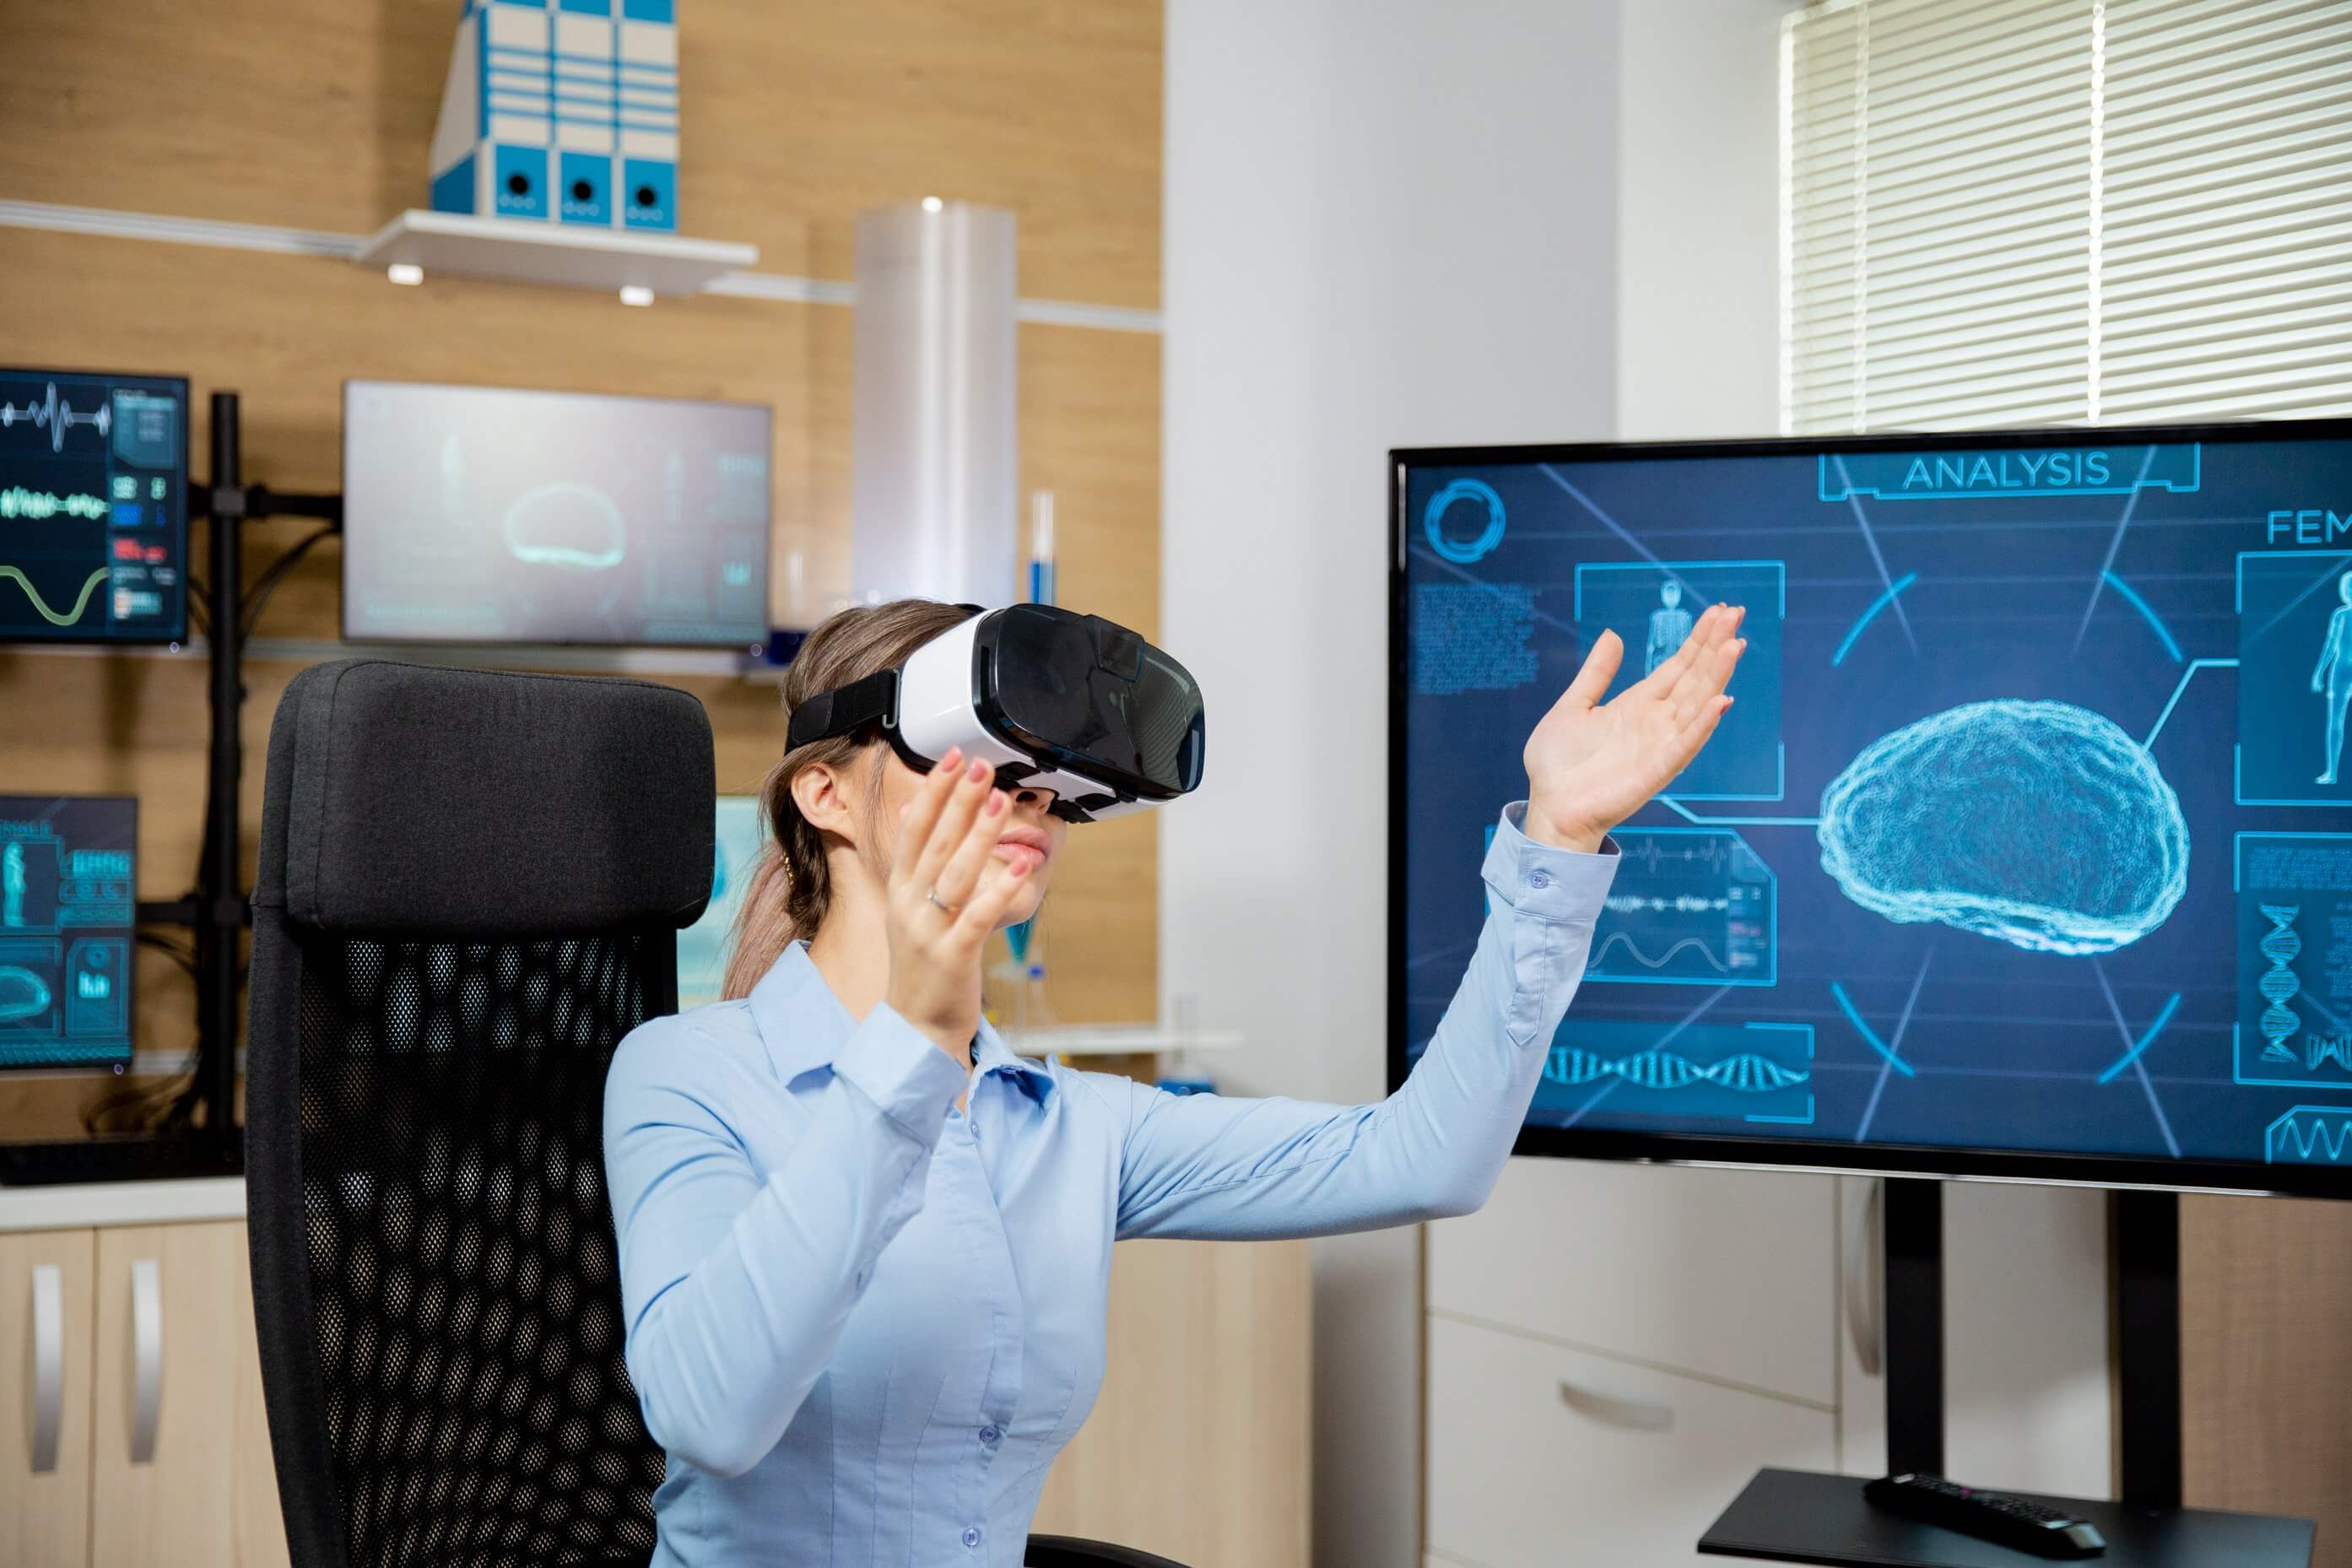 VR虚拟现实应用